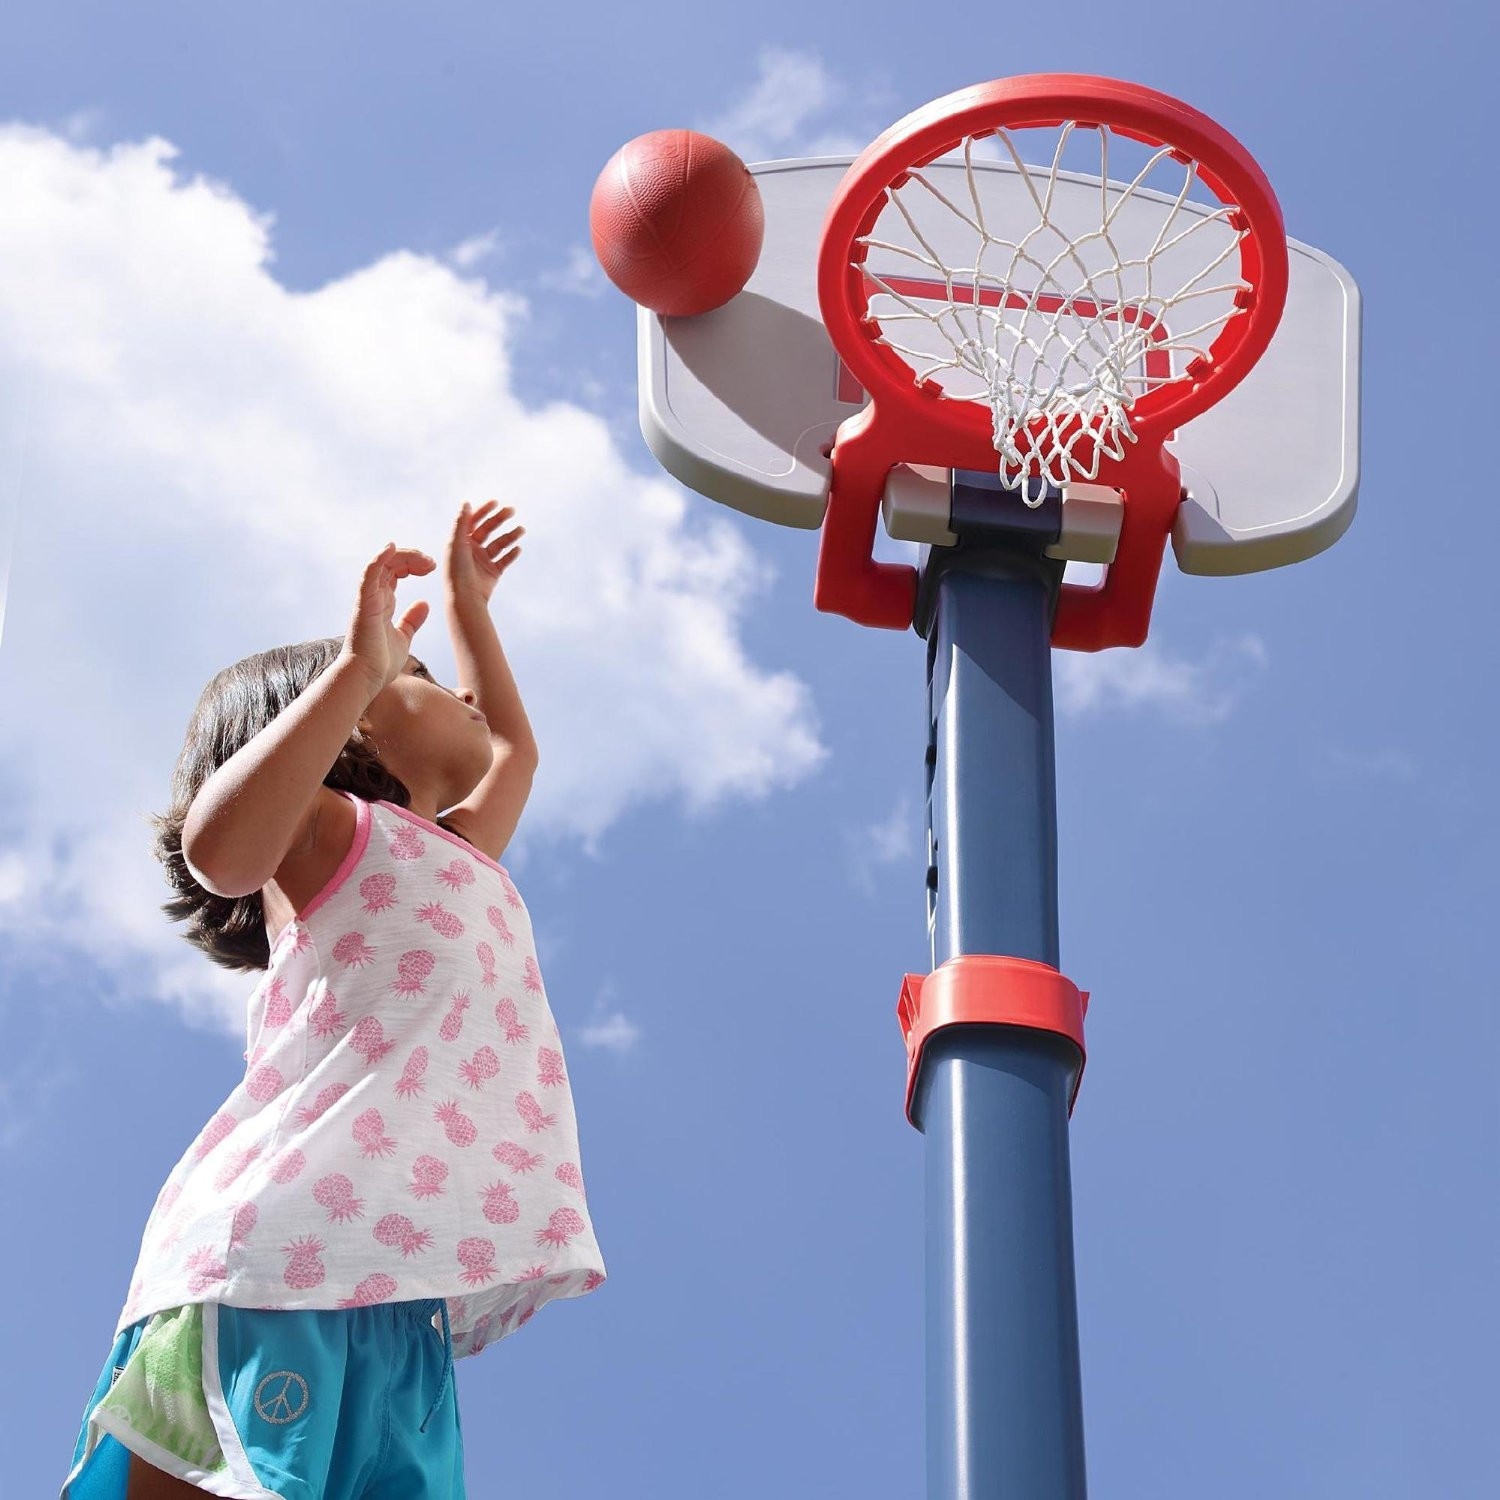 Indoor Basketball Hoop For Kids
 Buy Adjustable Basketball Hoop For Kids Indoor Outdoor